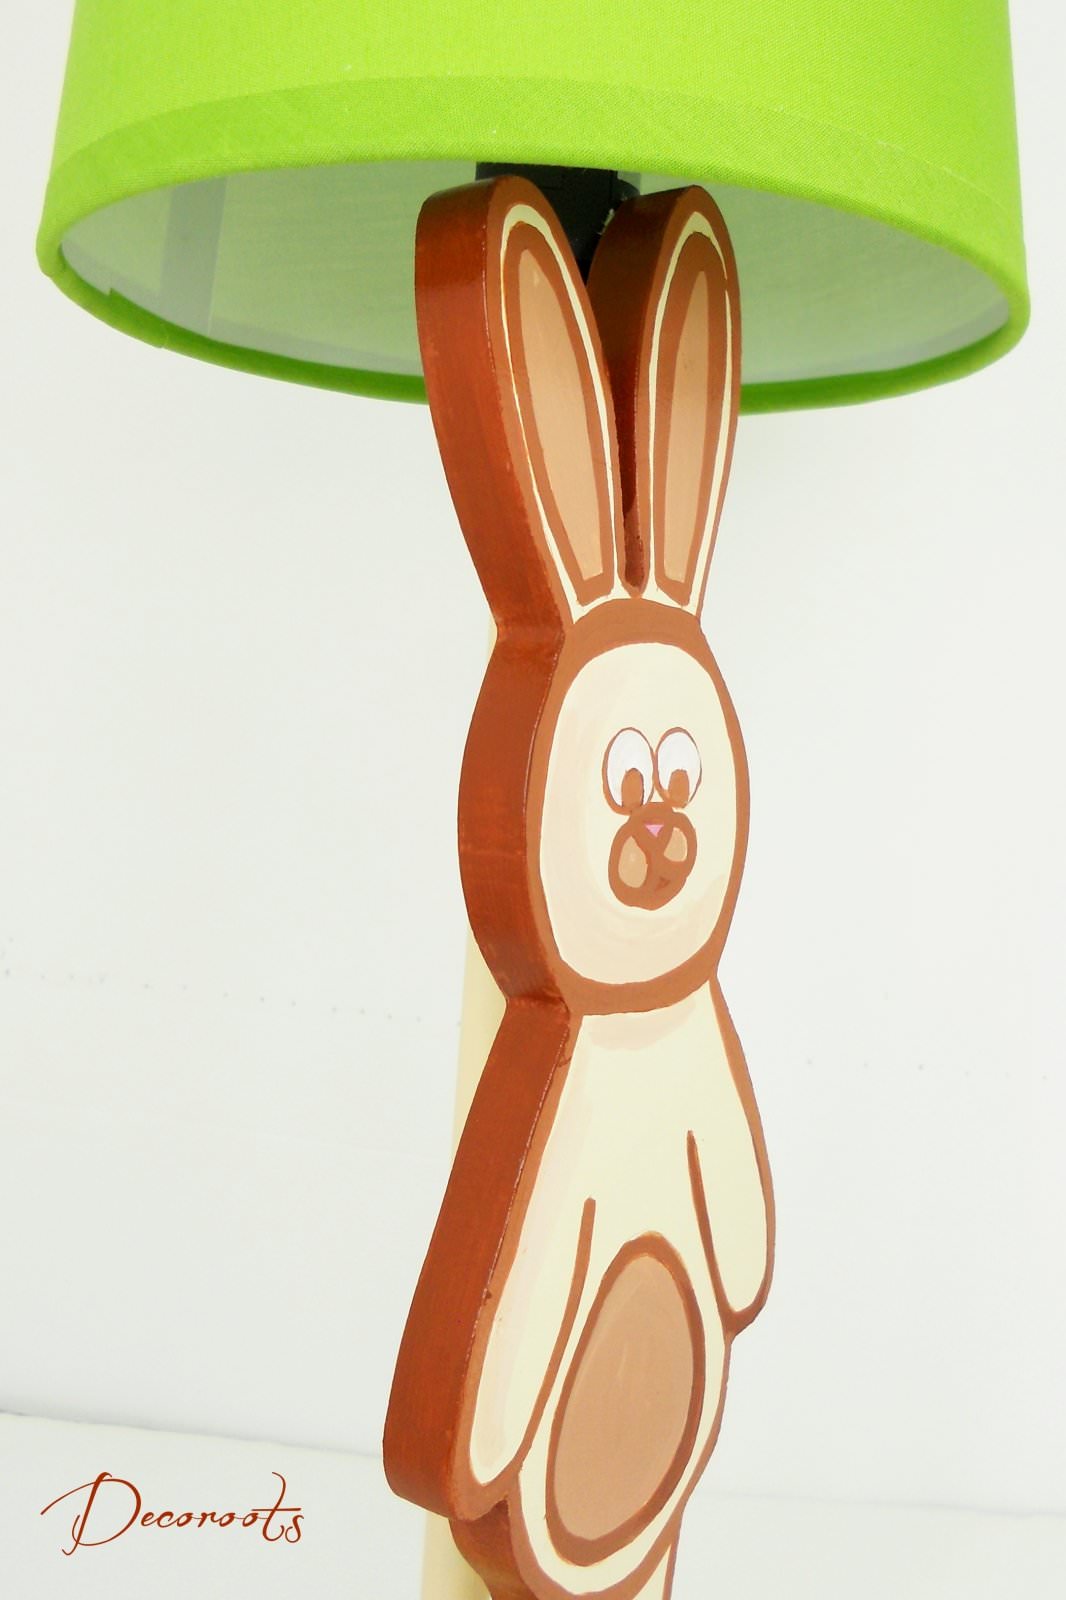 lampe de chevet enfant bébé lapin beige et vert marron chocolat luminaire